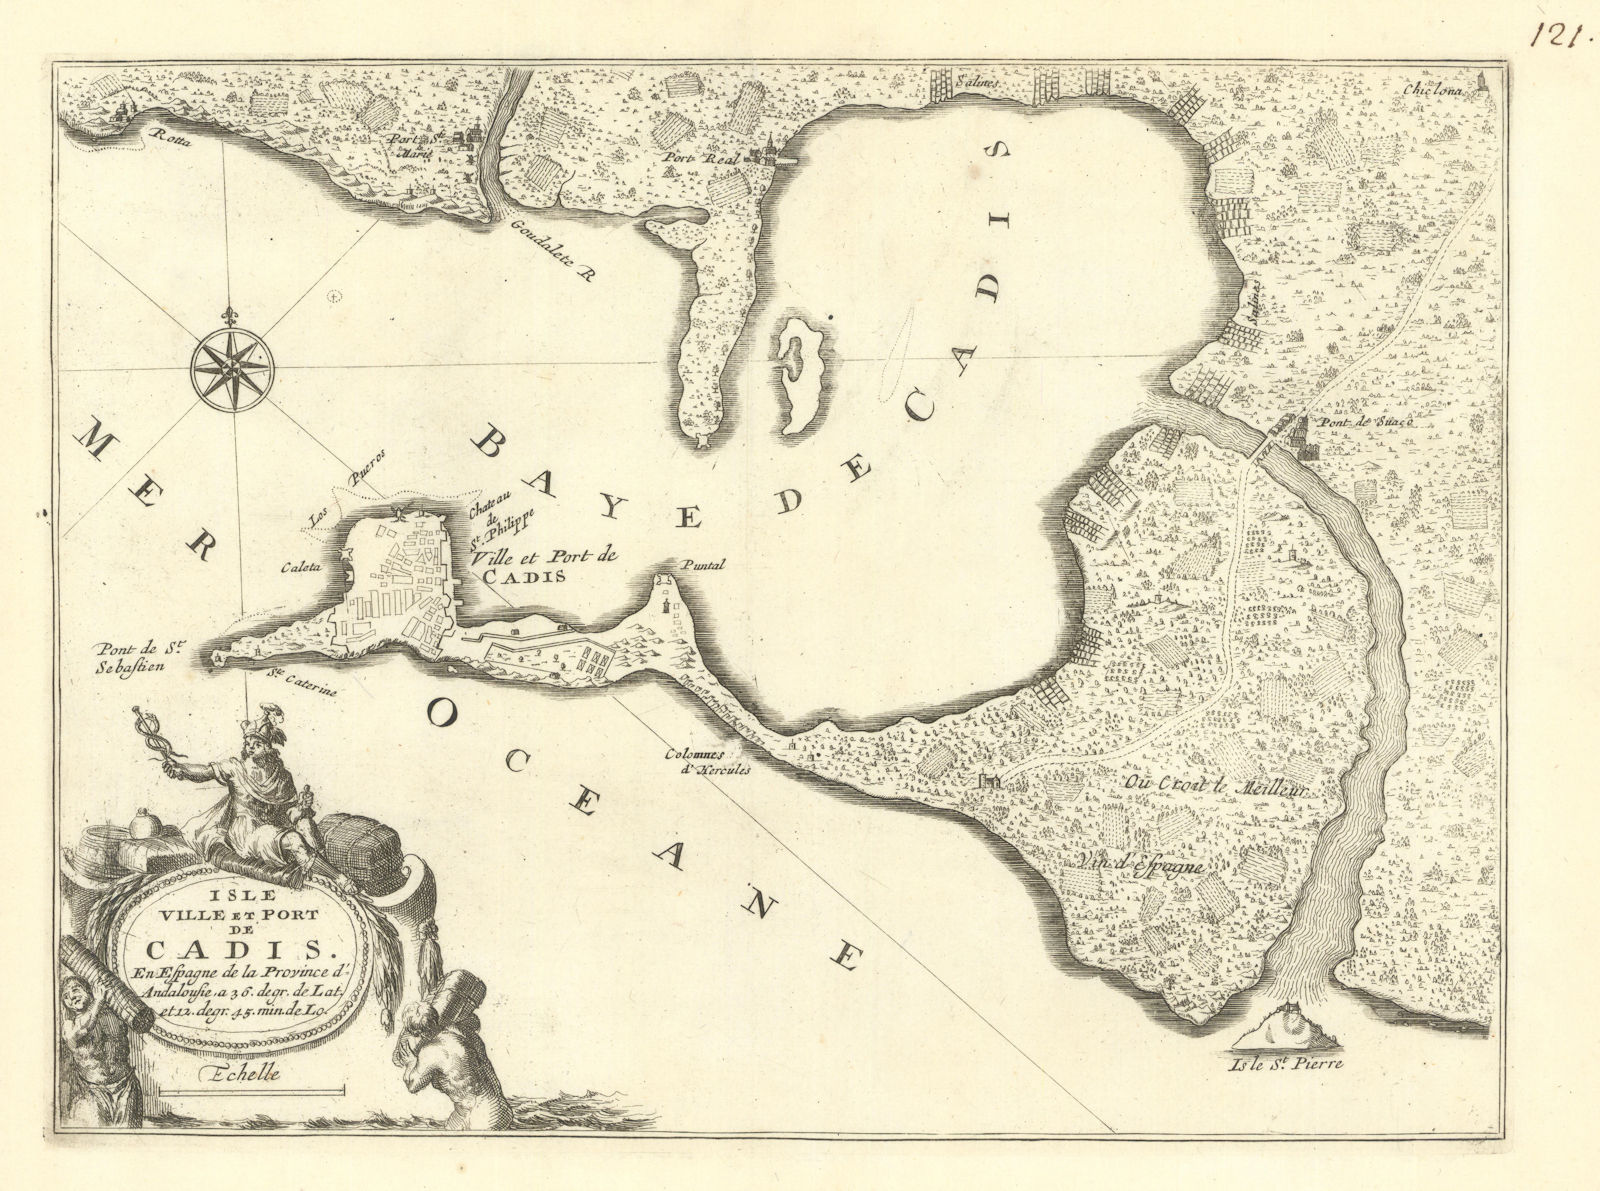 'Isle, ville et port de Cadis'. Bay and city of Cadiz, Spain. DE FER c1697 map